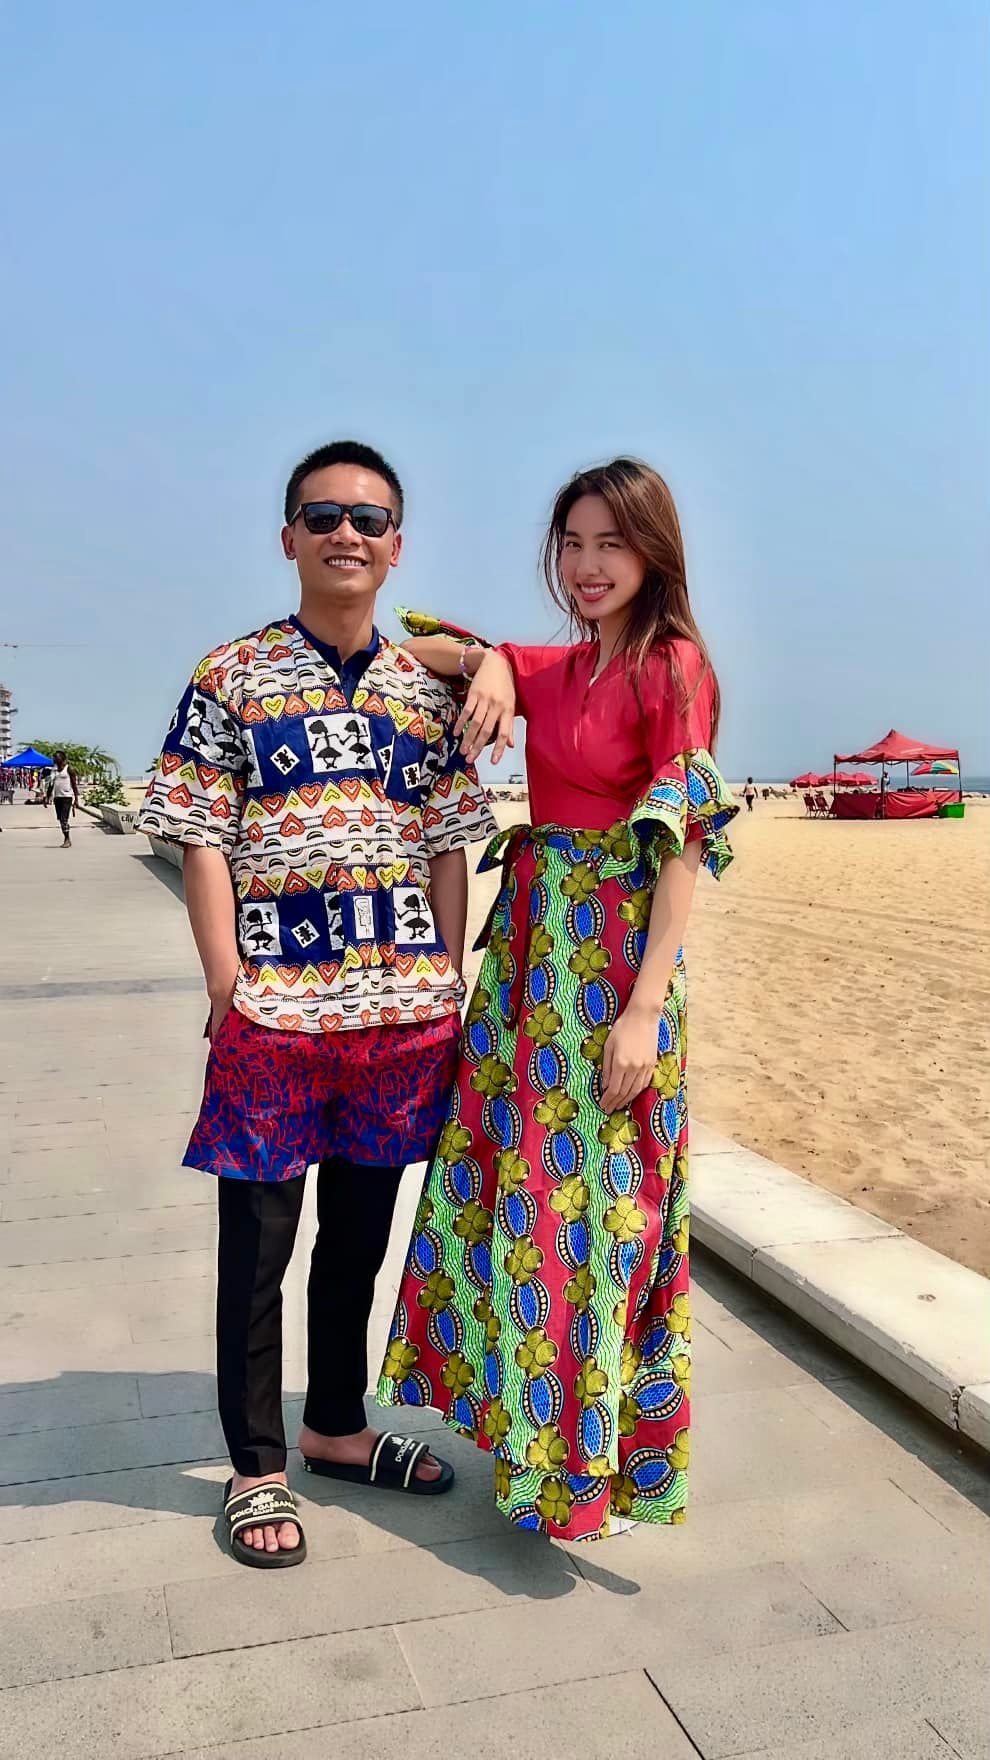 Trang phục dân tộc đầy màu sắc và vẻ đẹp, là một phần không thể thiếu trong văn hóa Việt Nam. Nếu bạn muốn khám phá sự đa dạng và phong cách của trang phục dân tộc, hãy xem những bức ảnh đẹp về chủ đề này.